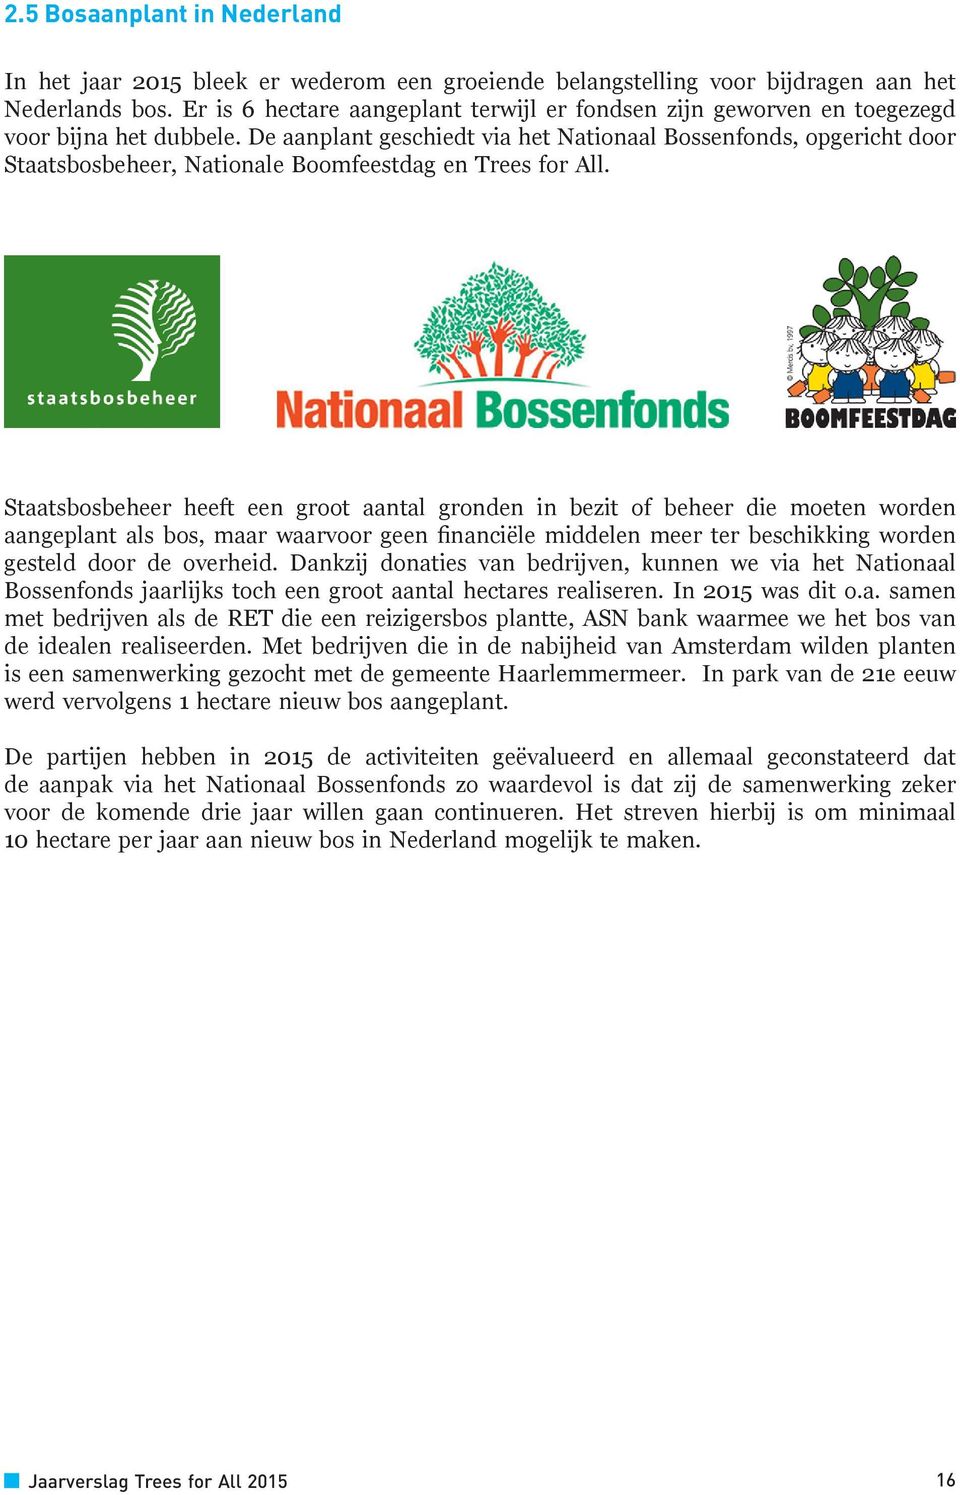 De aanplant geschiedt via het Nationaal Bossenfonds, opgericht door Staatsbosbeheer, Nationale Boomfeestdag en Trees for All.